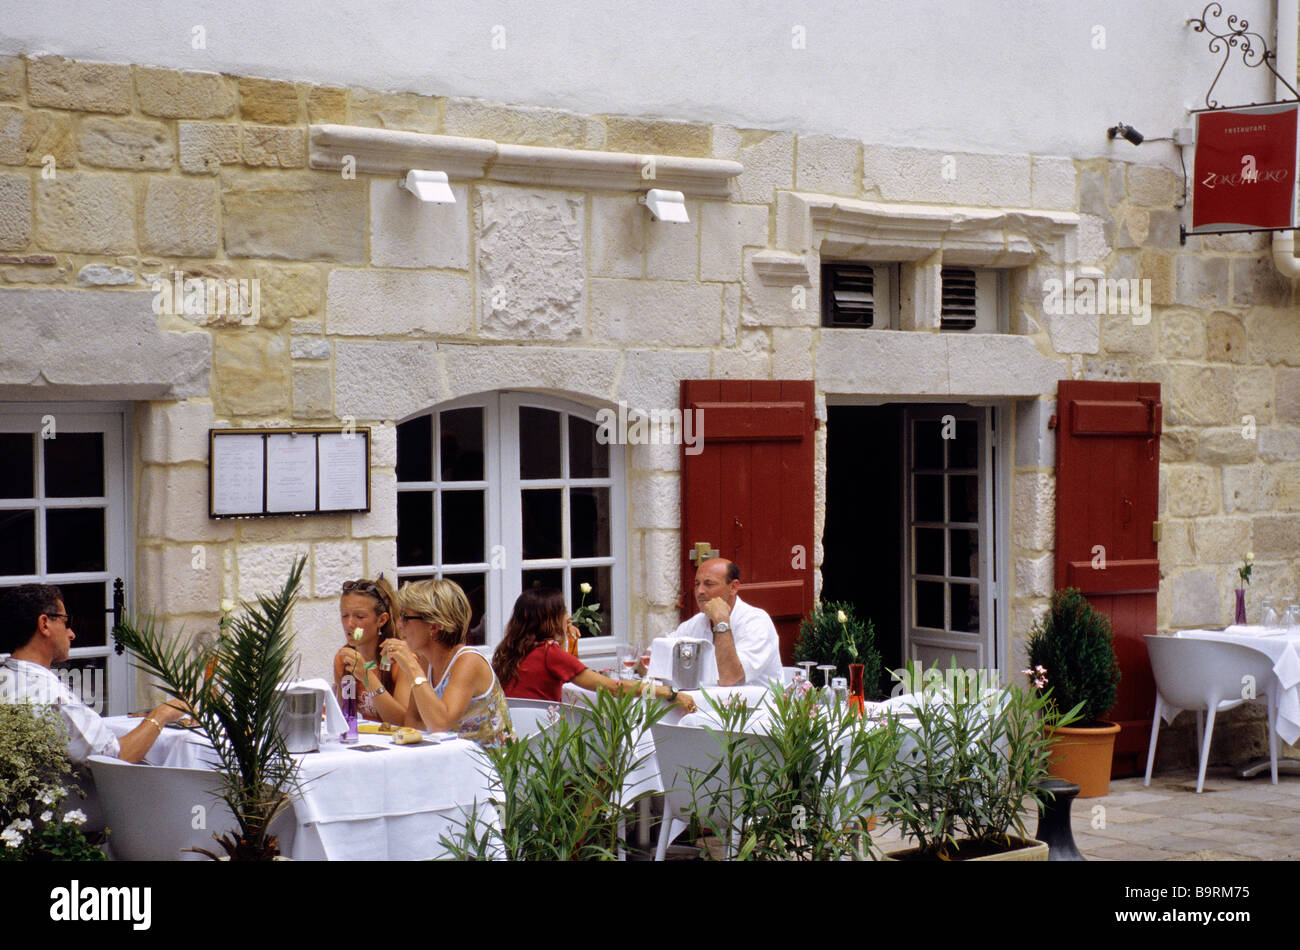 Francia, Pirineos Atlánticos, Pays Basque, Saint Jean de Luz, Zoko Moko  Restaurante, 6 rue Mazarin, terraza Fotografía de stock - Alamy